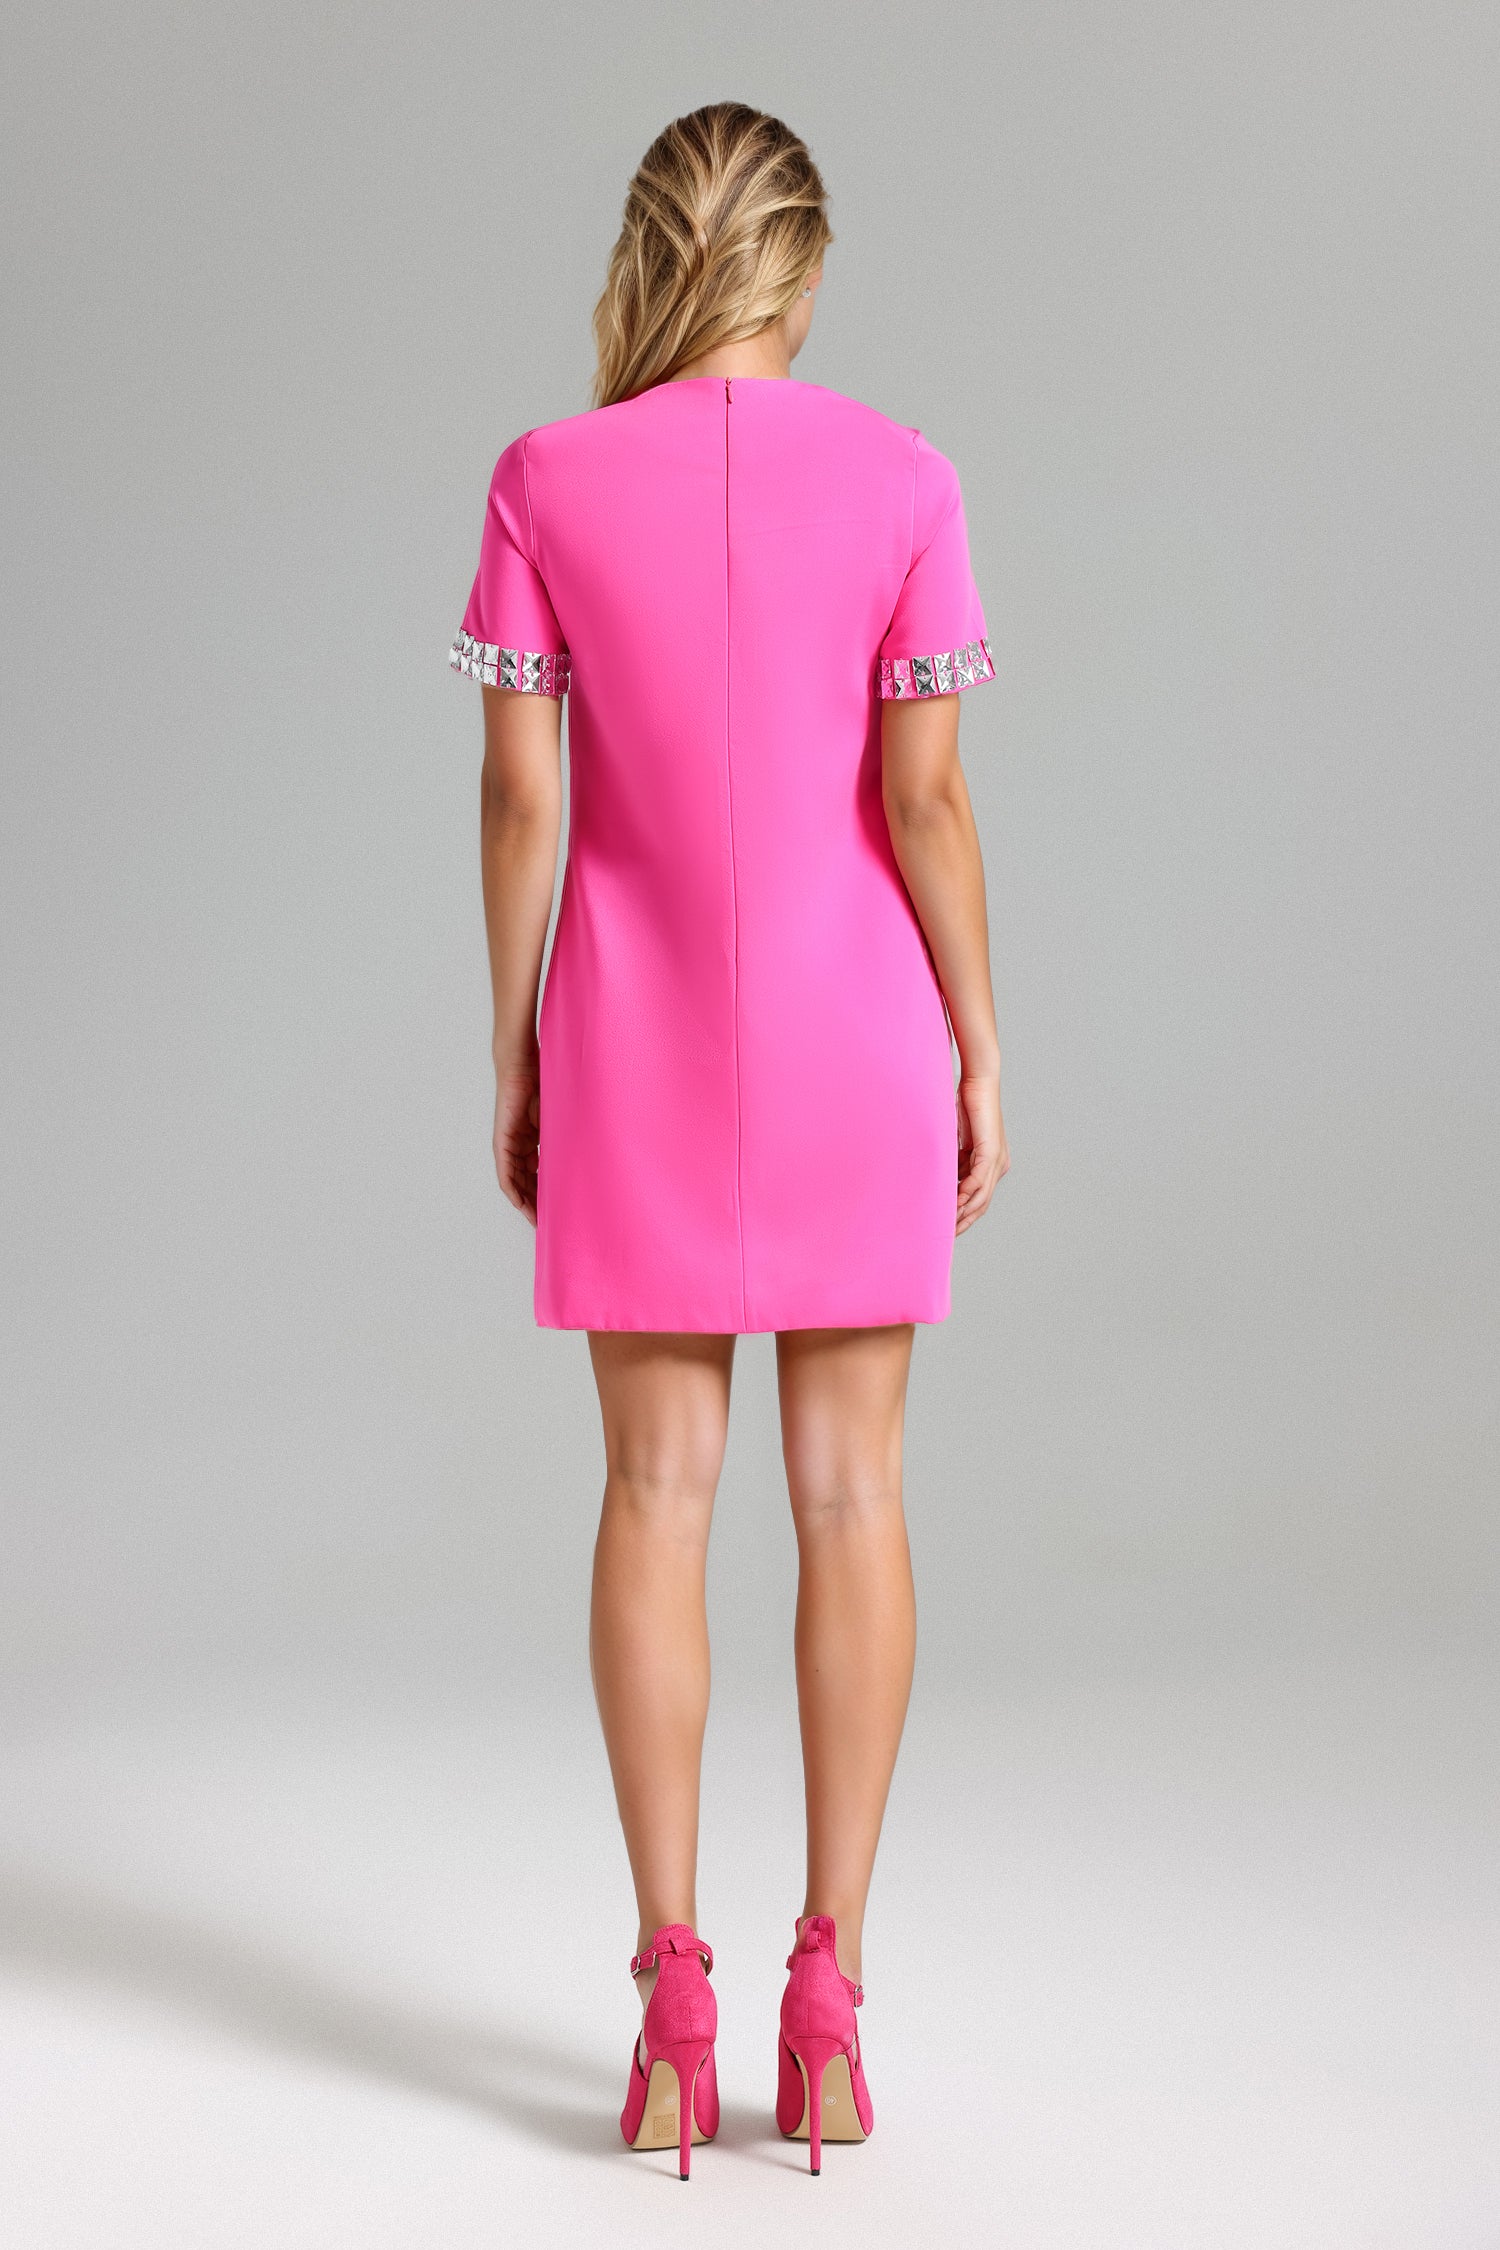 Lyla Diamated Mini Dress - Pink